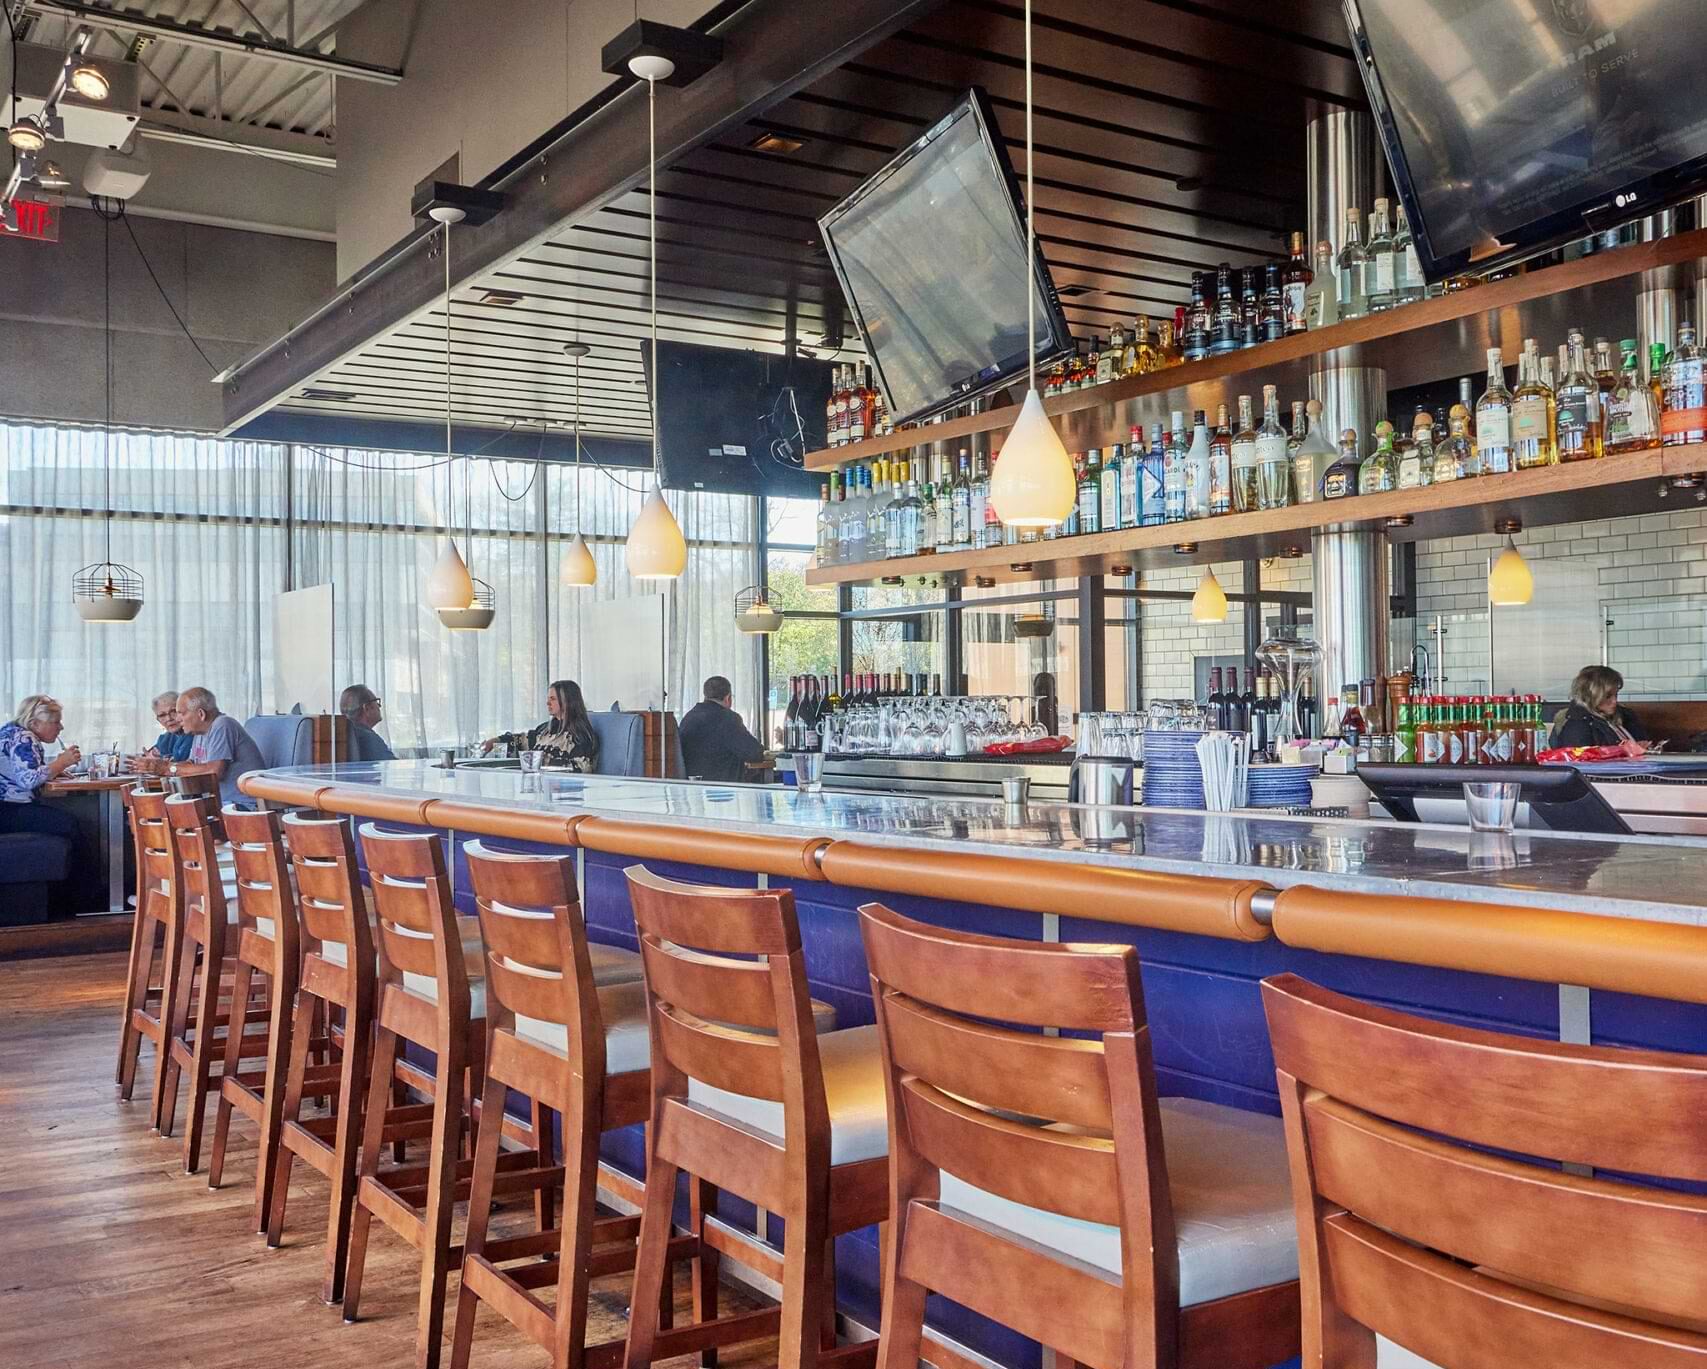 Four Square Restaurant & Bar, Braintree, MA, Reviews